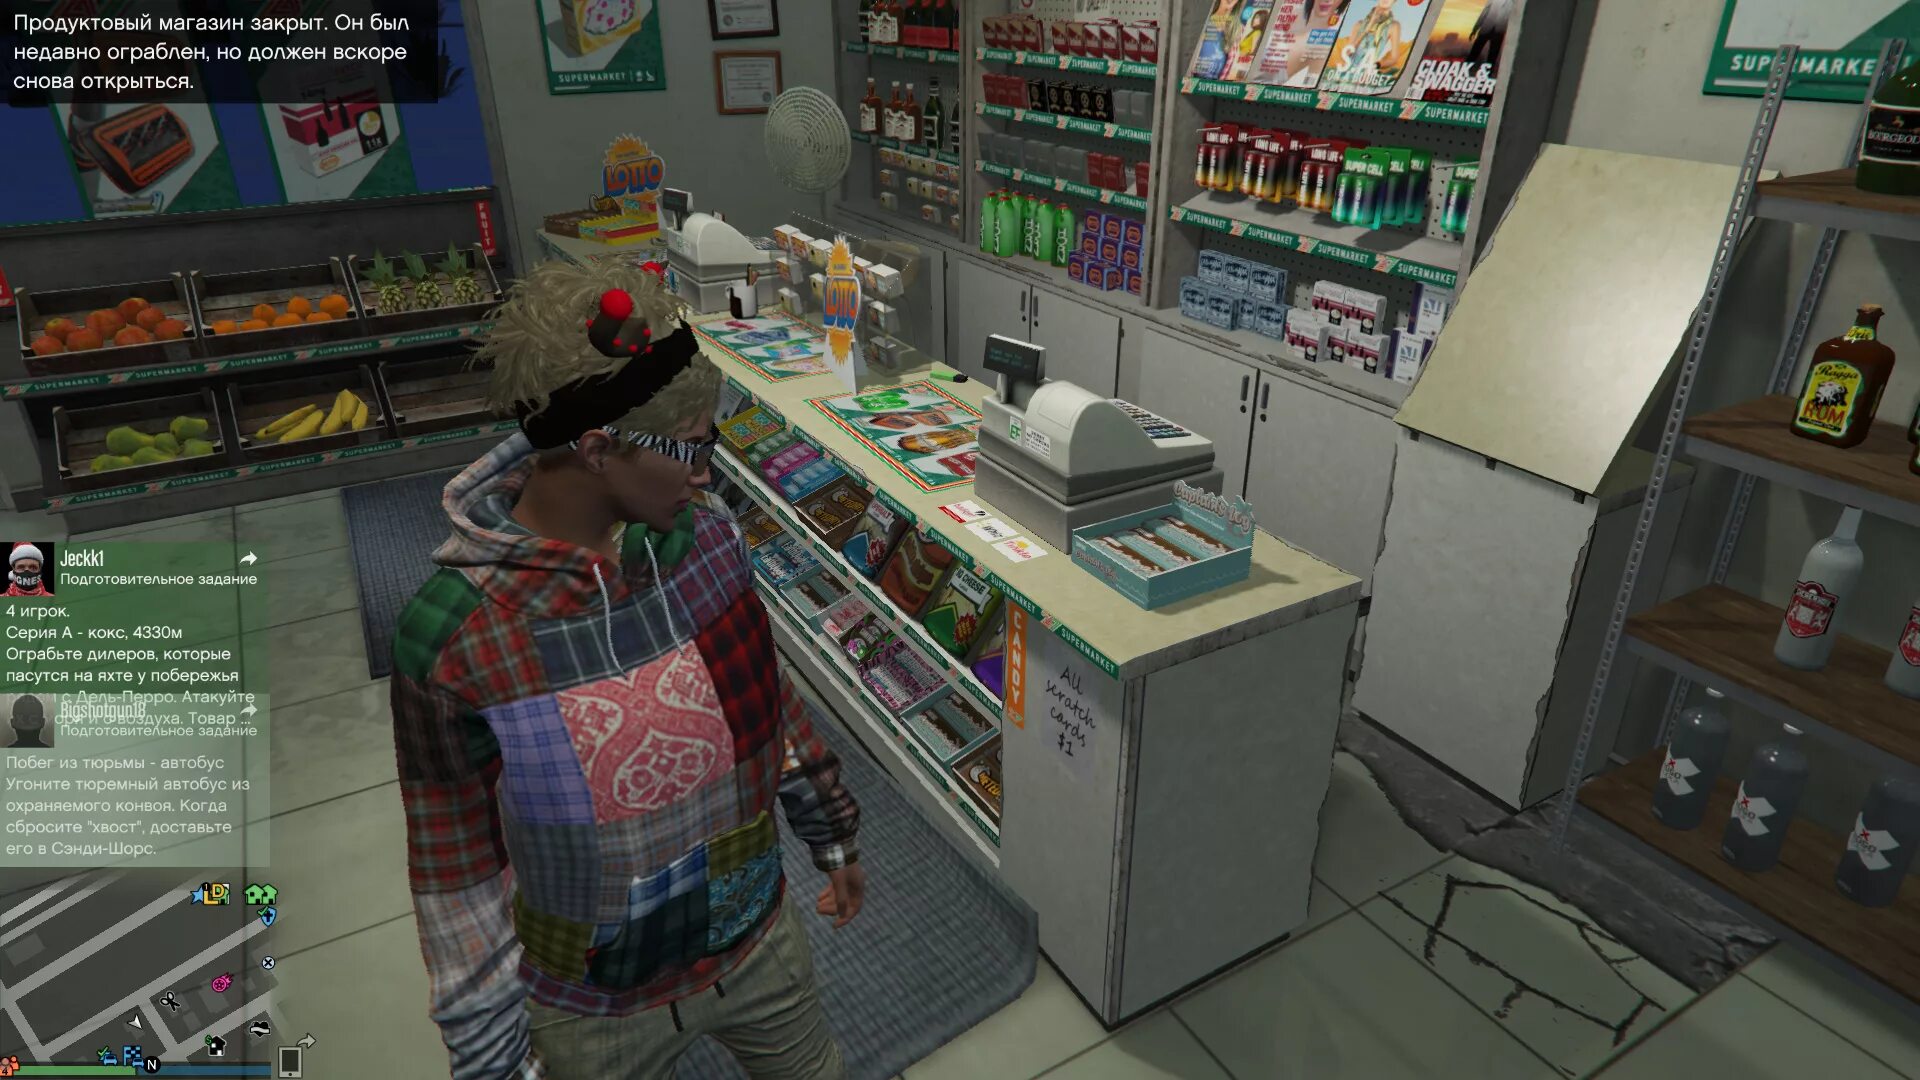 Гта магазины которые можно ограбить. GTA 5 магазины для ограбления. Ограбления люберельный магазин в ГТА 5. Ограбление магазина. Игра про ограбление магазина.